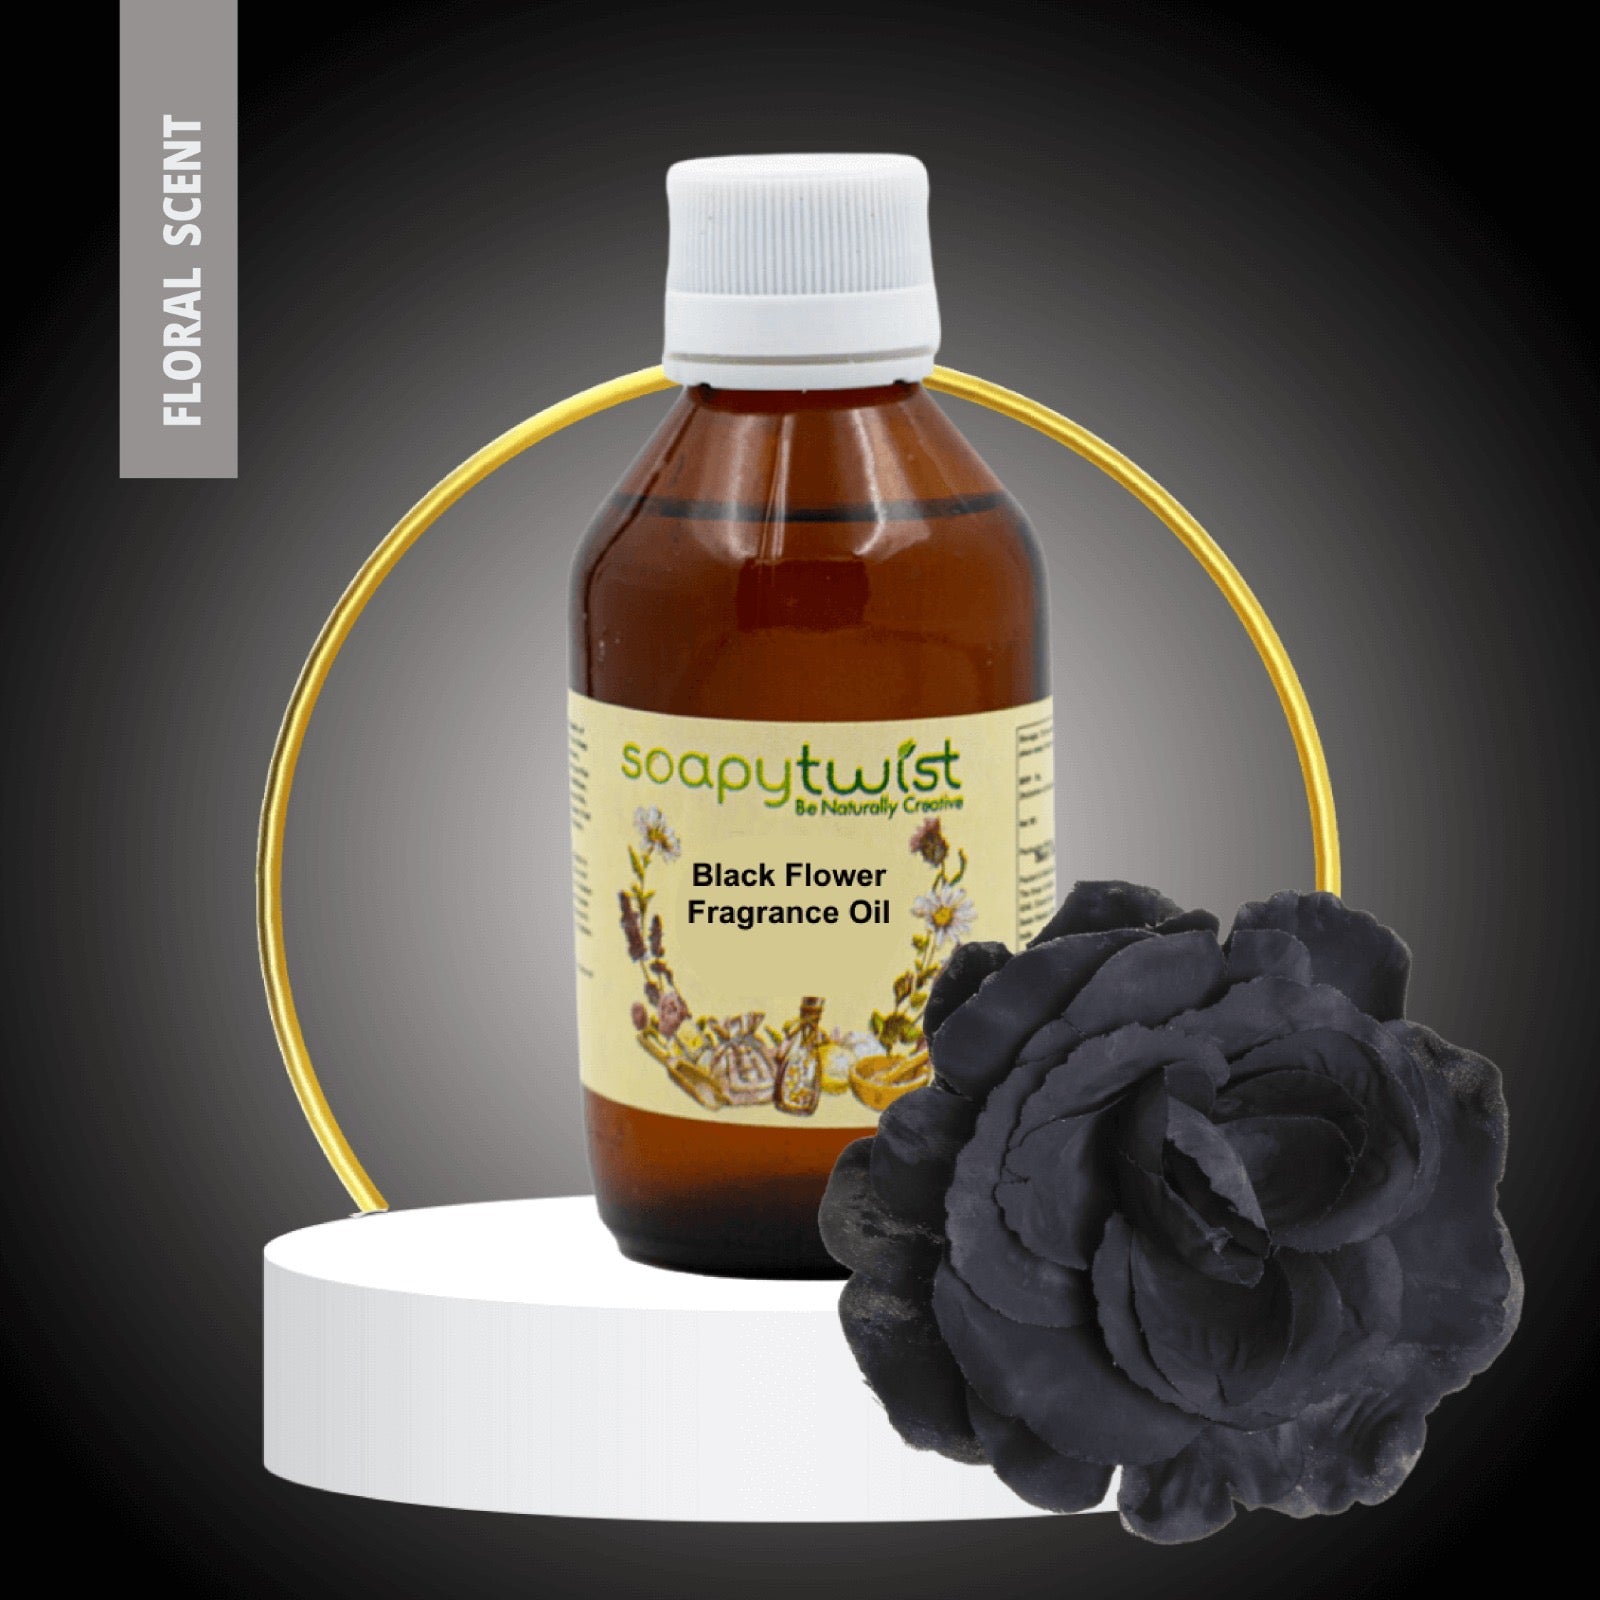 Black Flower Fragrance Oil